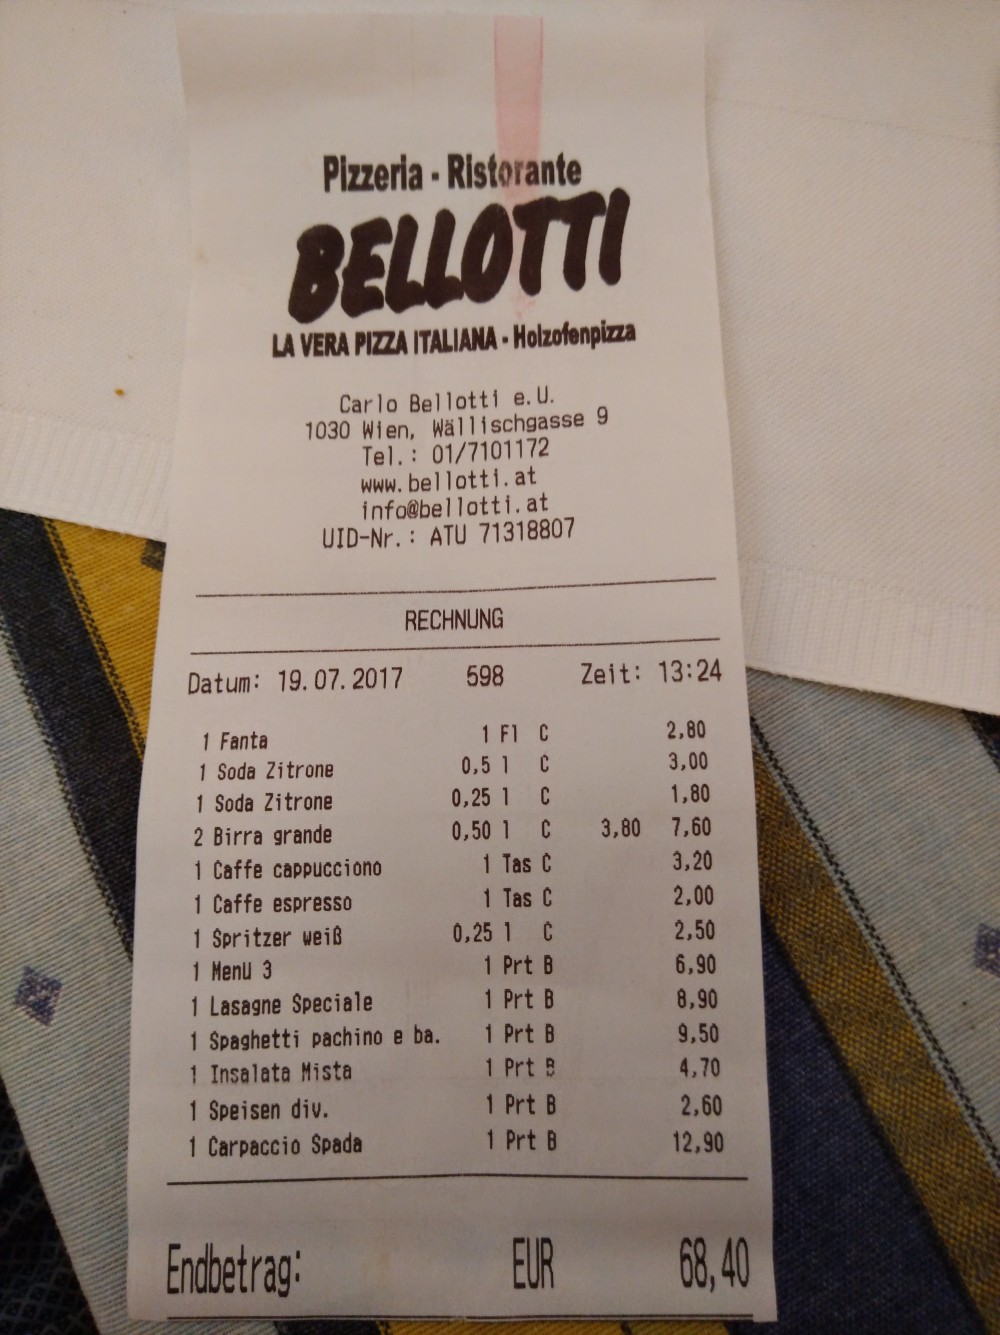 Rechnung - Pizzeria Bellotti - Wien